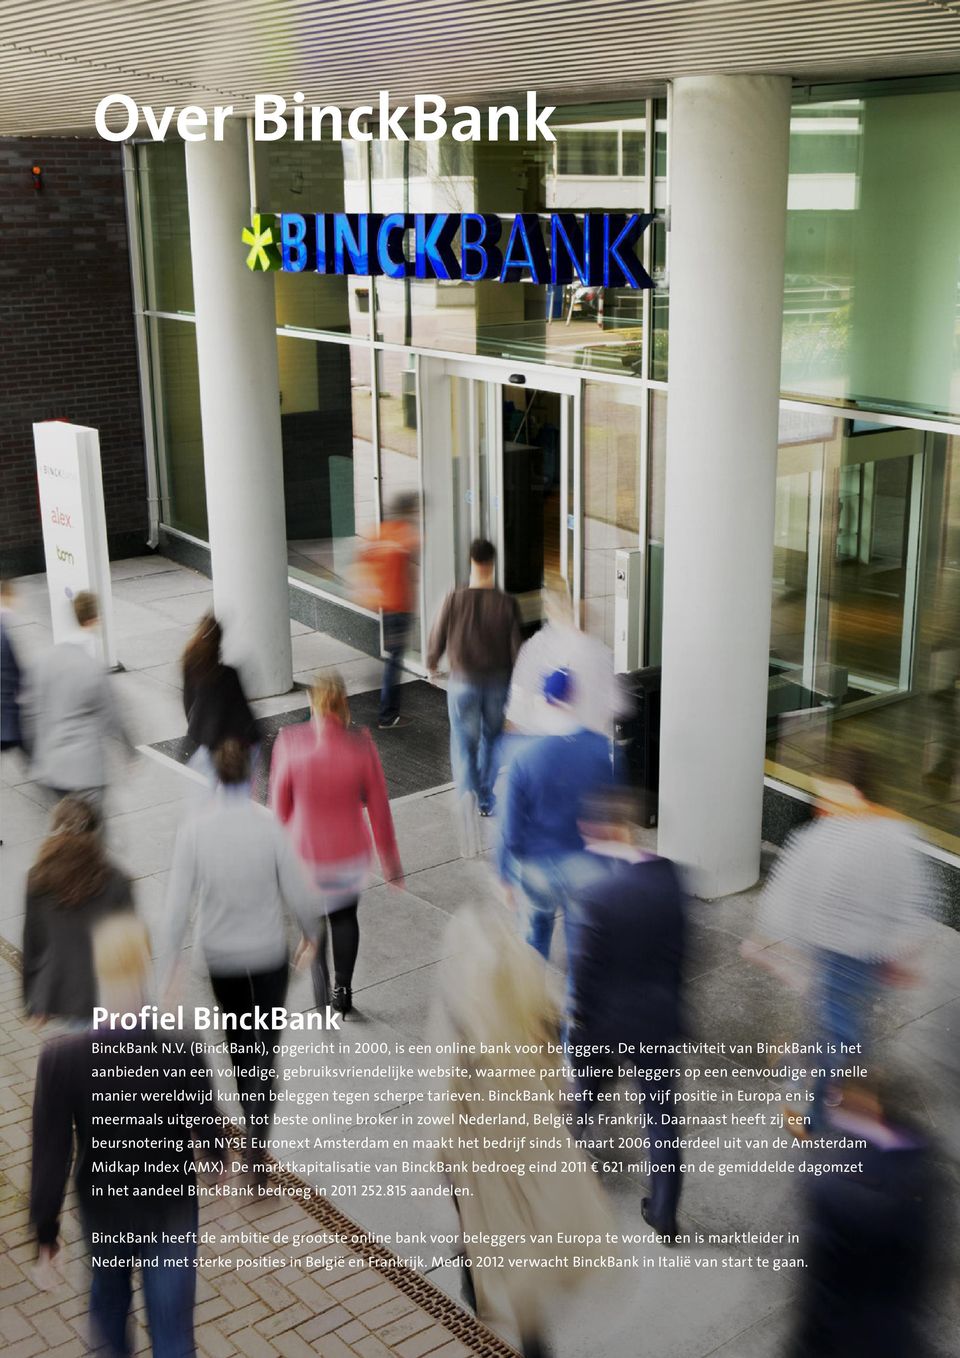 scherpe tarieven. BinckBank heeft een top vijf positie in Europa en is meermaals uitgeroepen tot beste online broker in zowel Nederland, België als Frankrijk.